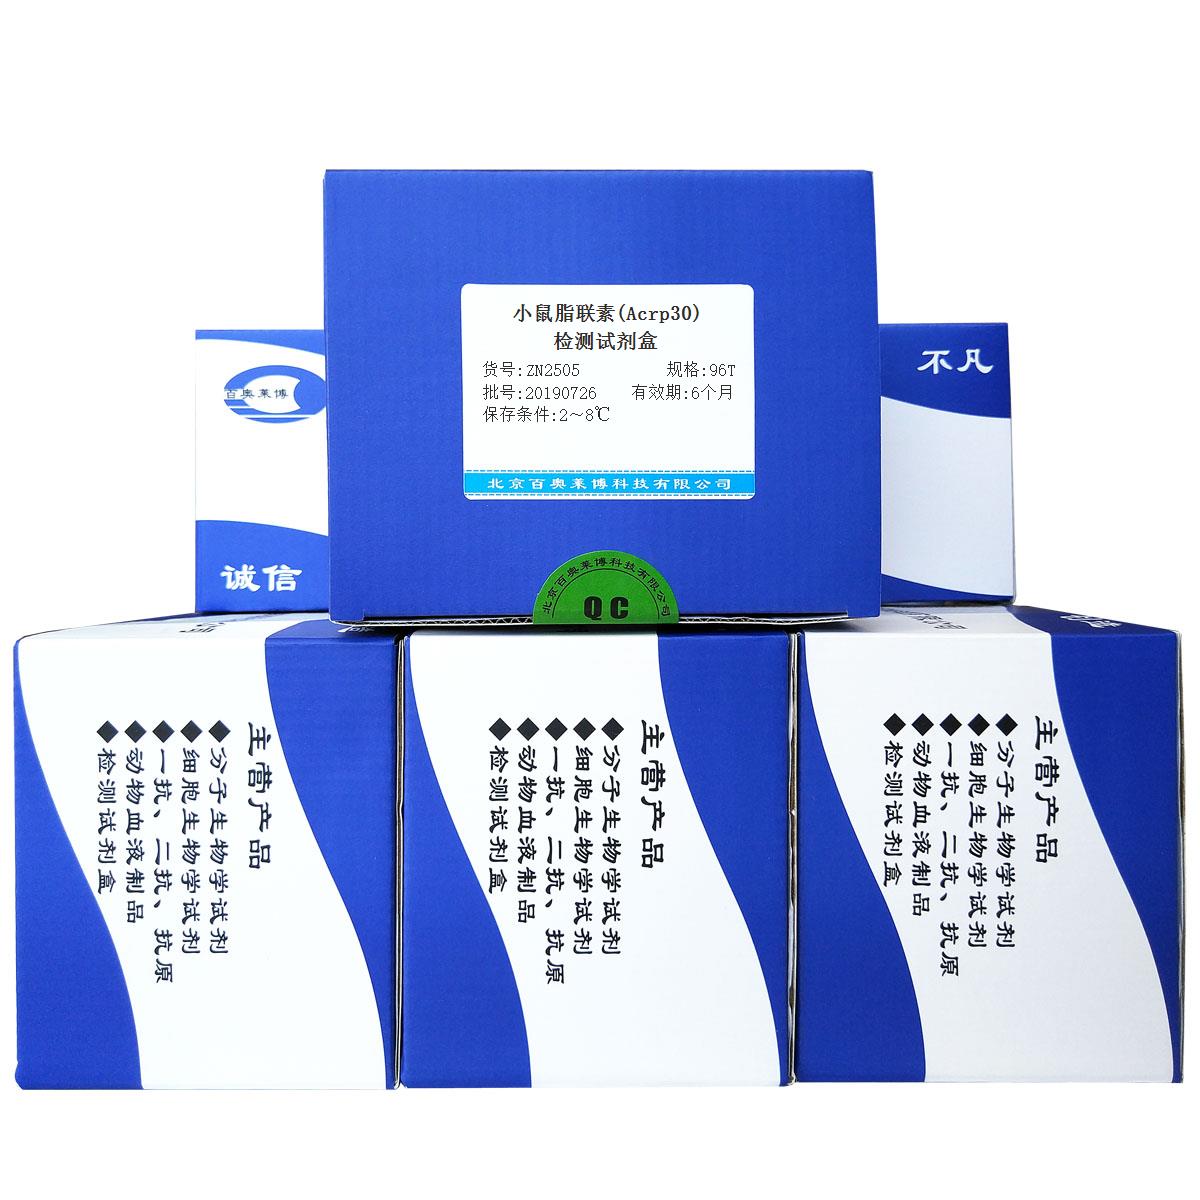 小鼠脂联素(Acrp30)检测试剂盒优惠促销